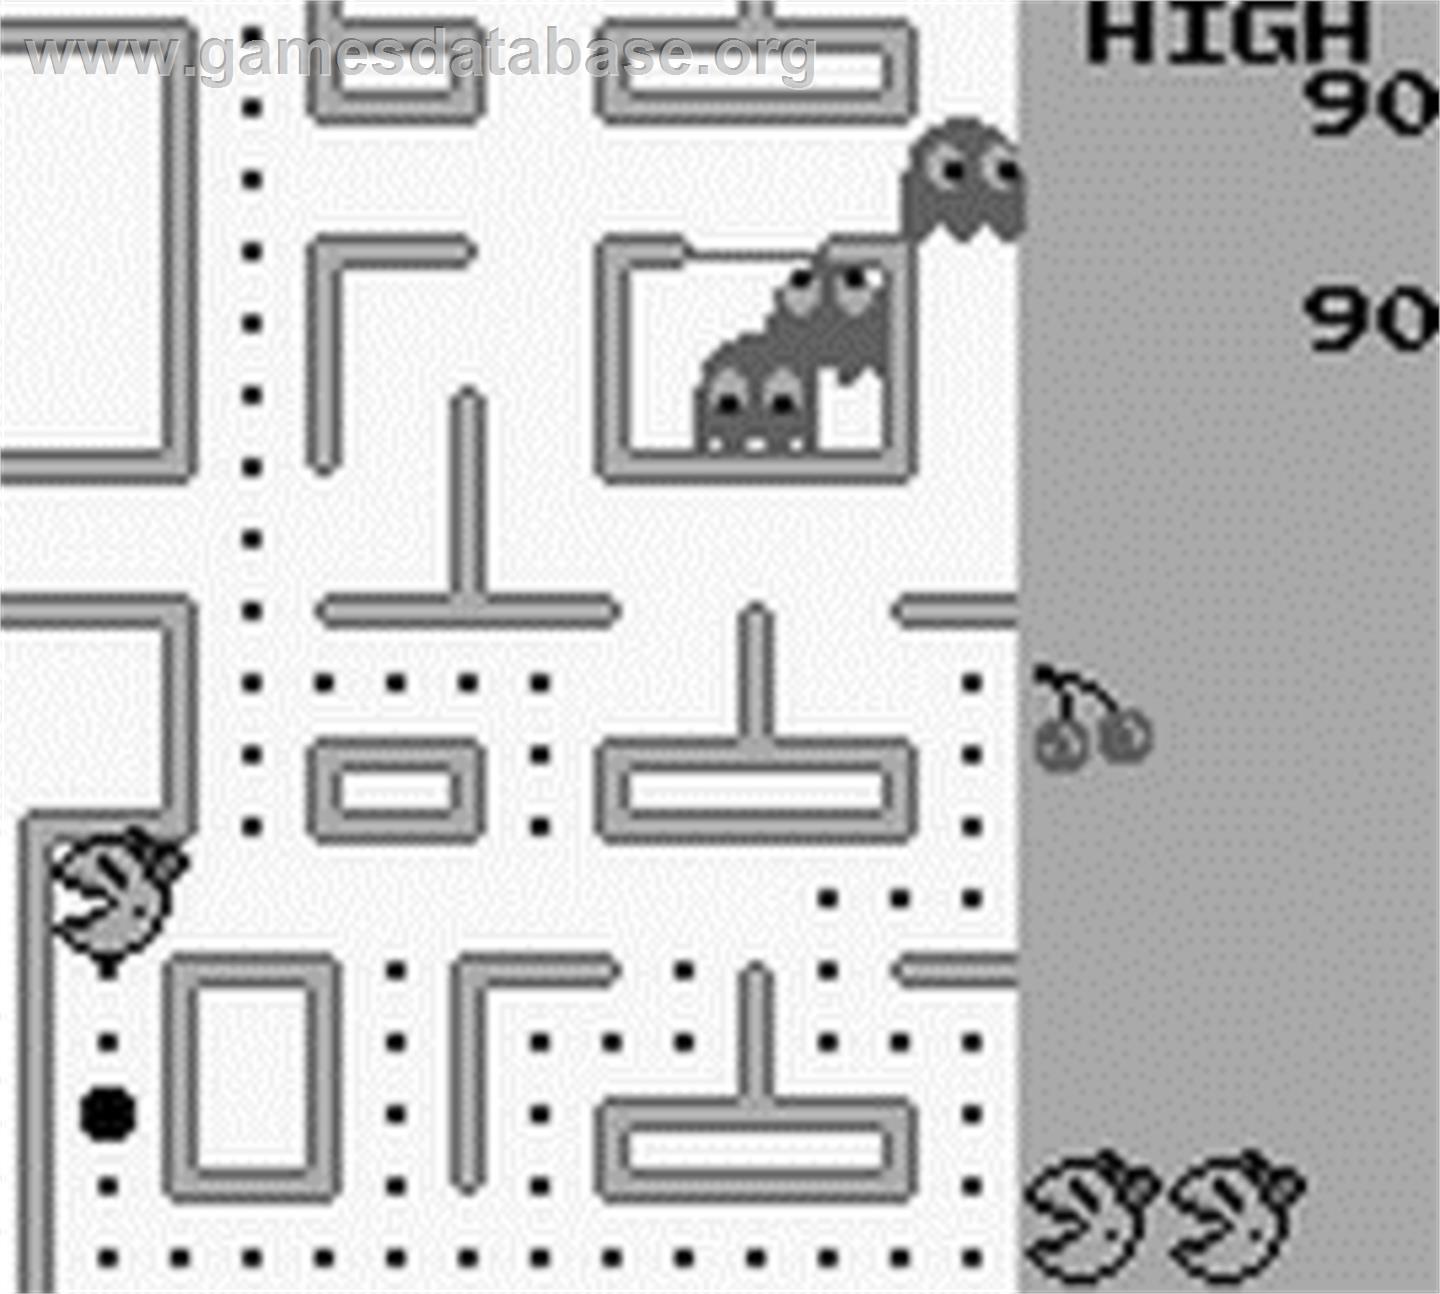 Ms. Pac-Man - Nintendo Game Boy - Artwork - In Game